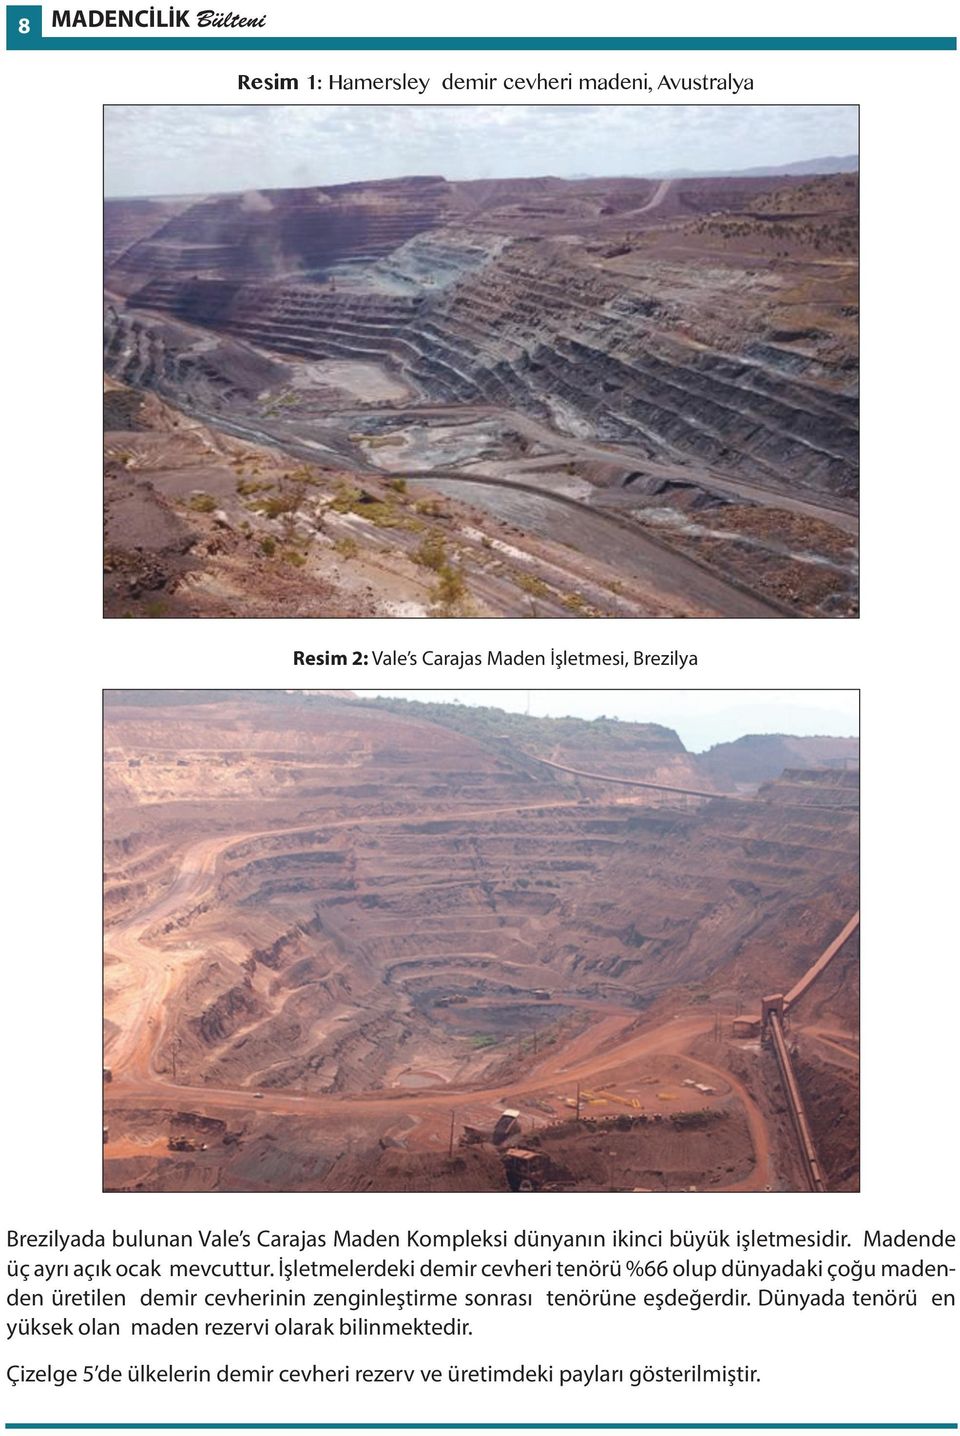 8 MADENCİLİK Bülteni Resim 1: Hamersley demir cevheri madeni, Avustralya Resim 1: Hamersley demir cevheri madeni, Avustralya Türkiye de Demir Cevheri Madenciliği Resim 2: Vale s Carajas Maden